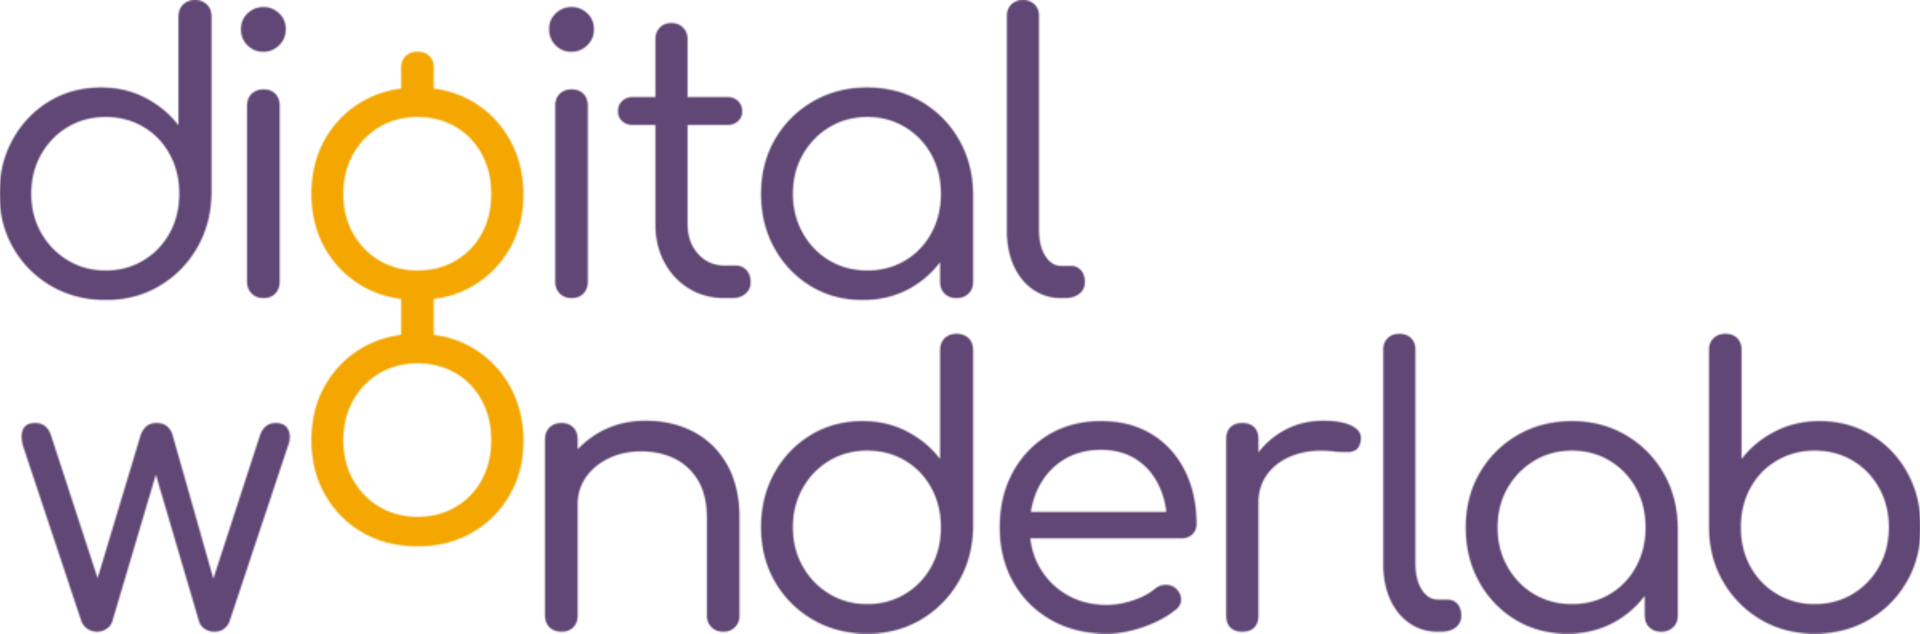 A logo for digital wonderlab